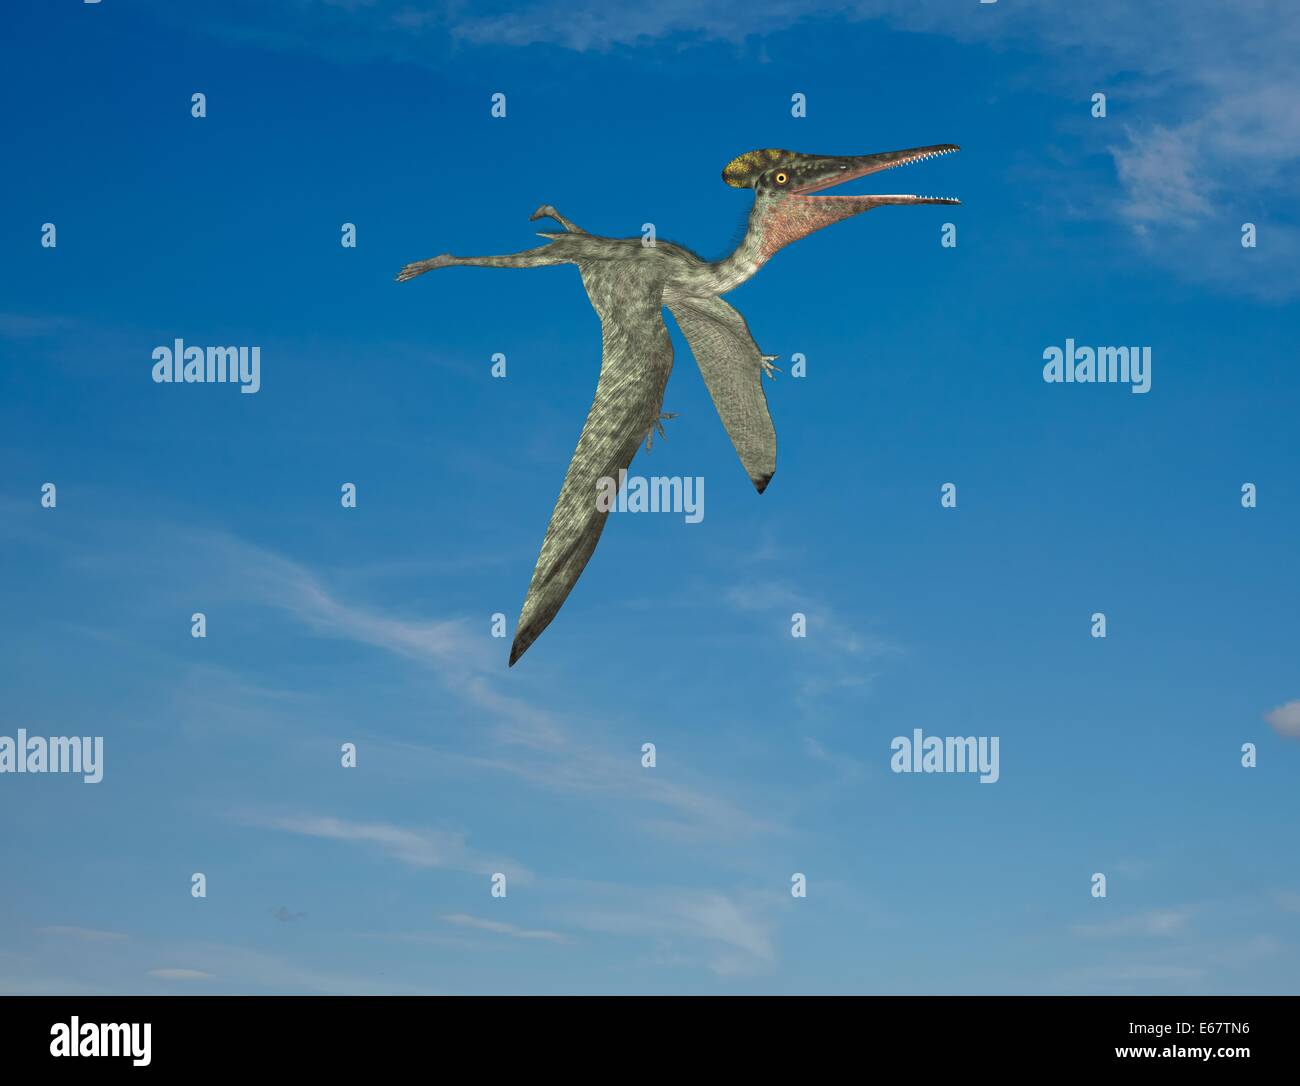 Dinosaurier Pterodactylus / Pterodactylus dinosauro Foto Stock